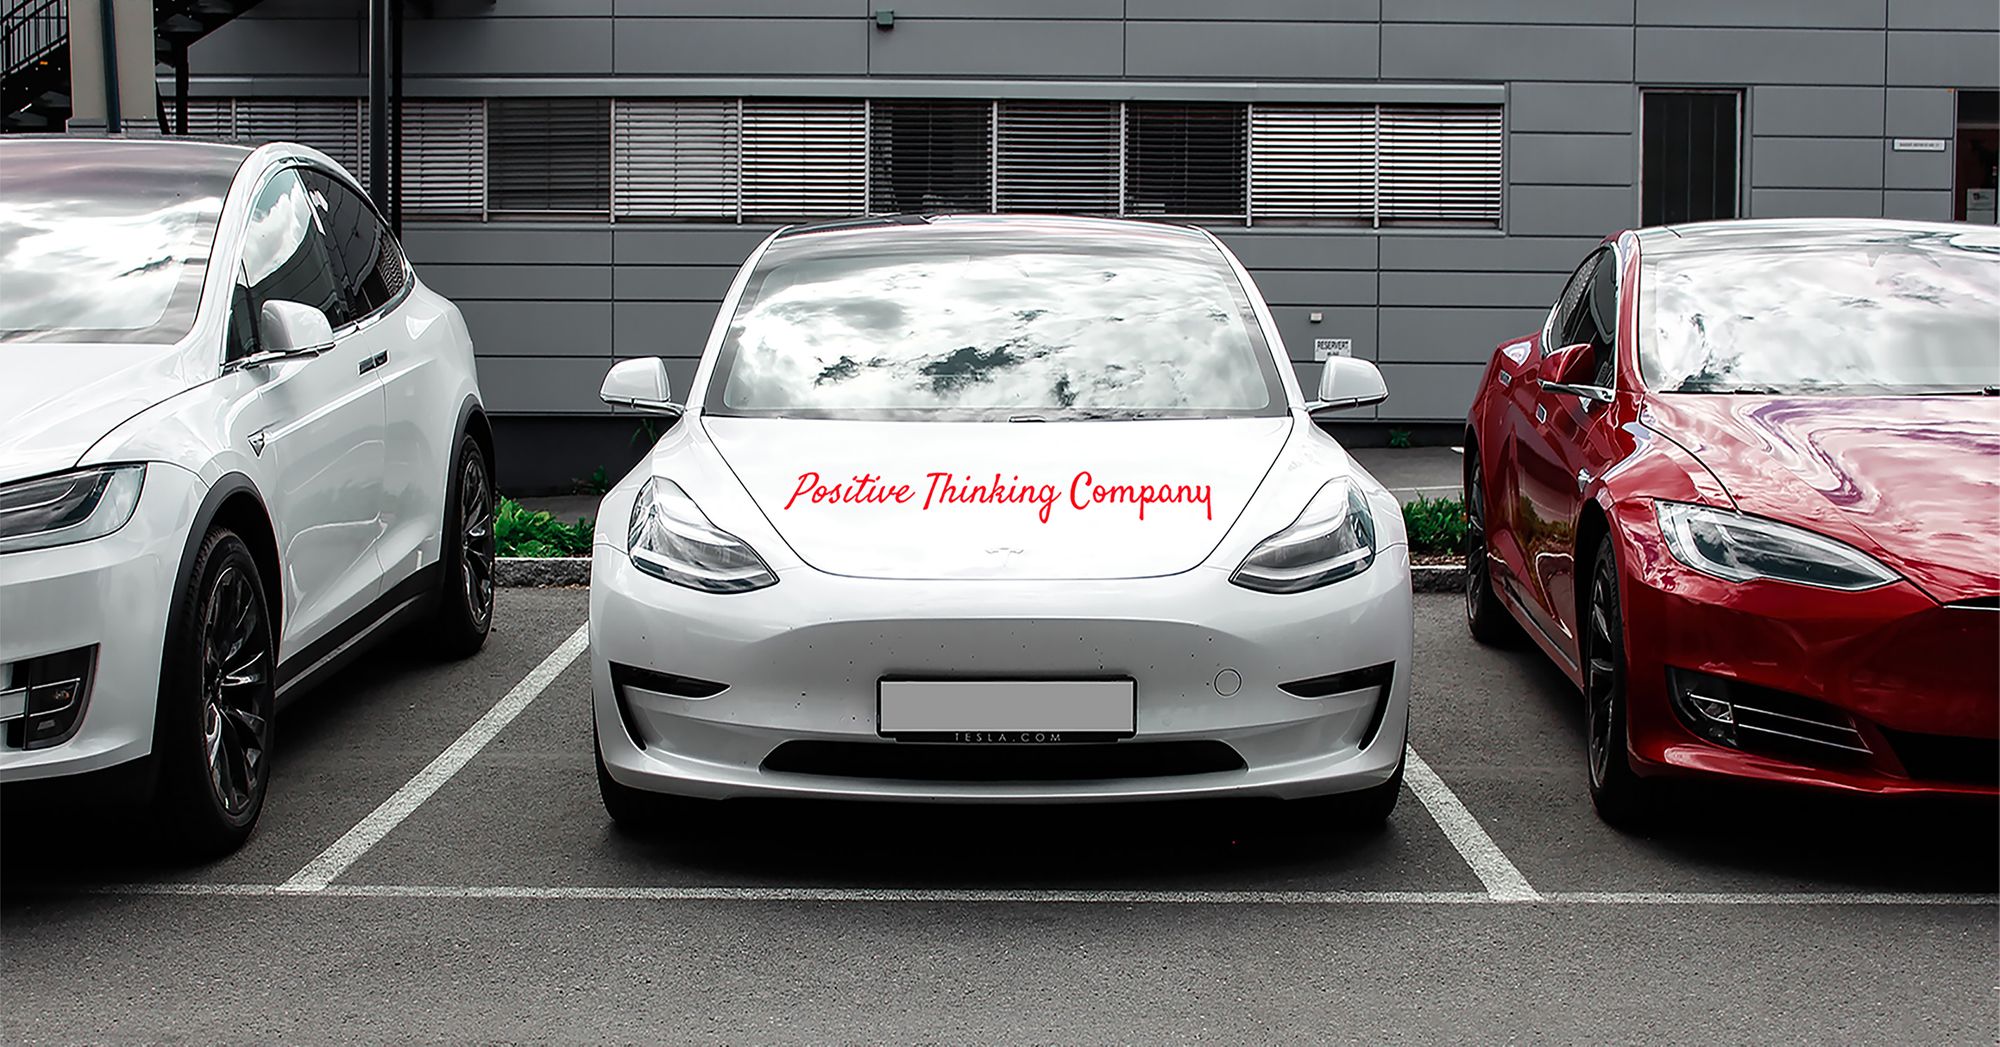 Positive Thinking Company vehicles